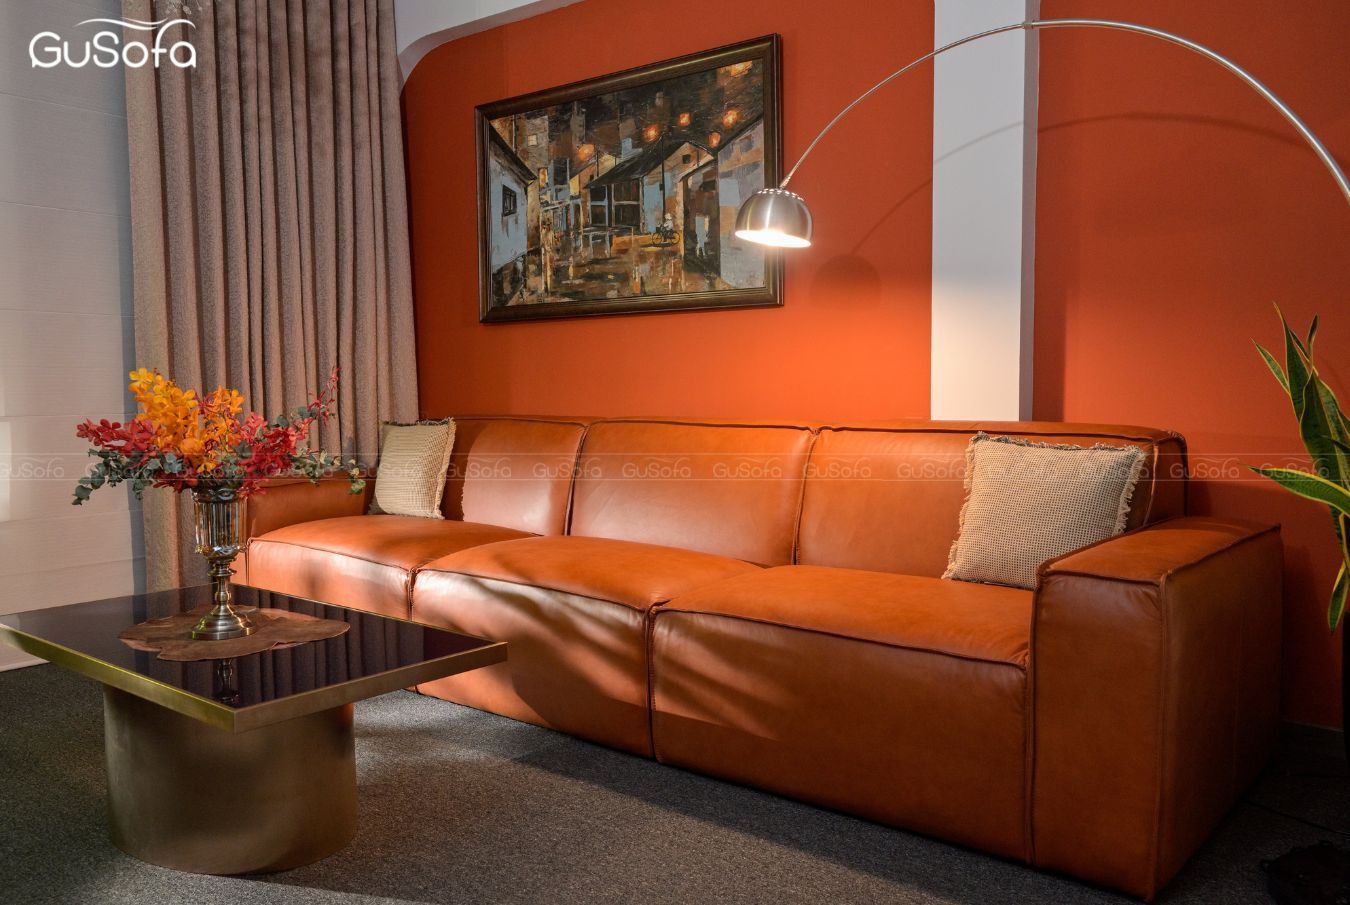  Ghế sofa băng GuBasic size lớn 3,5m form cao Da bò Brazil 80% GUG22 